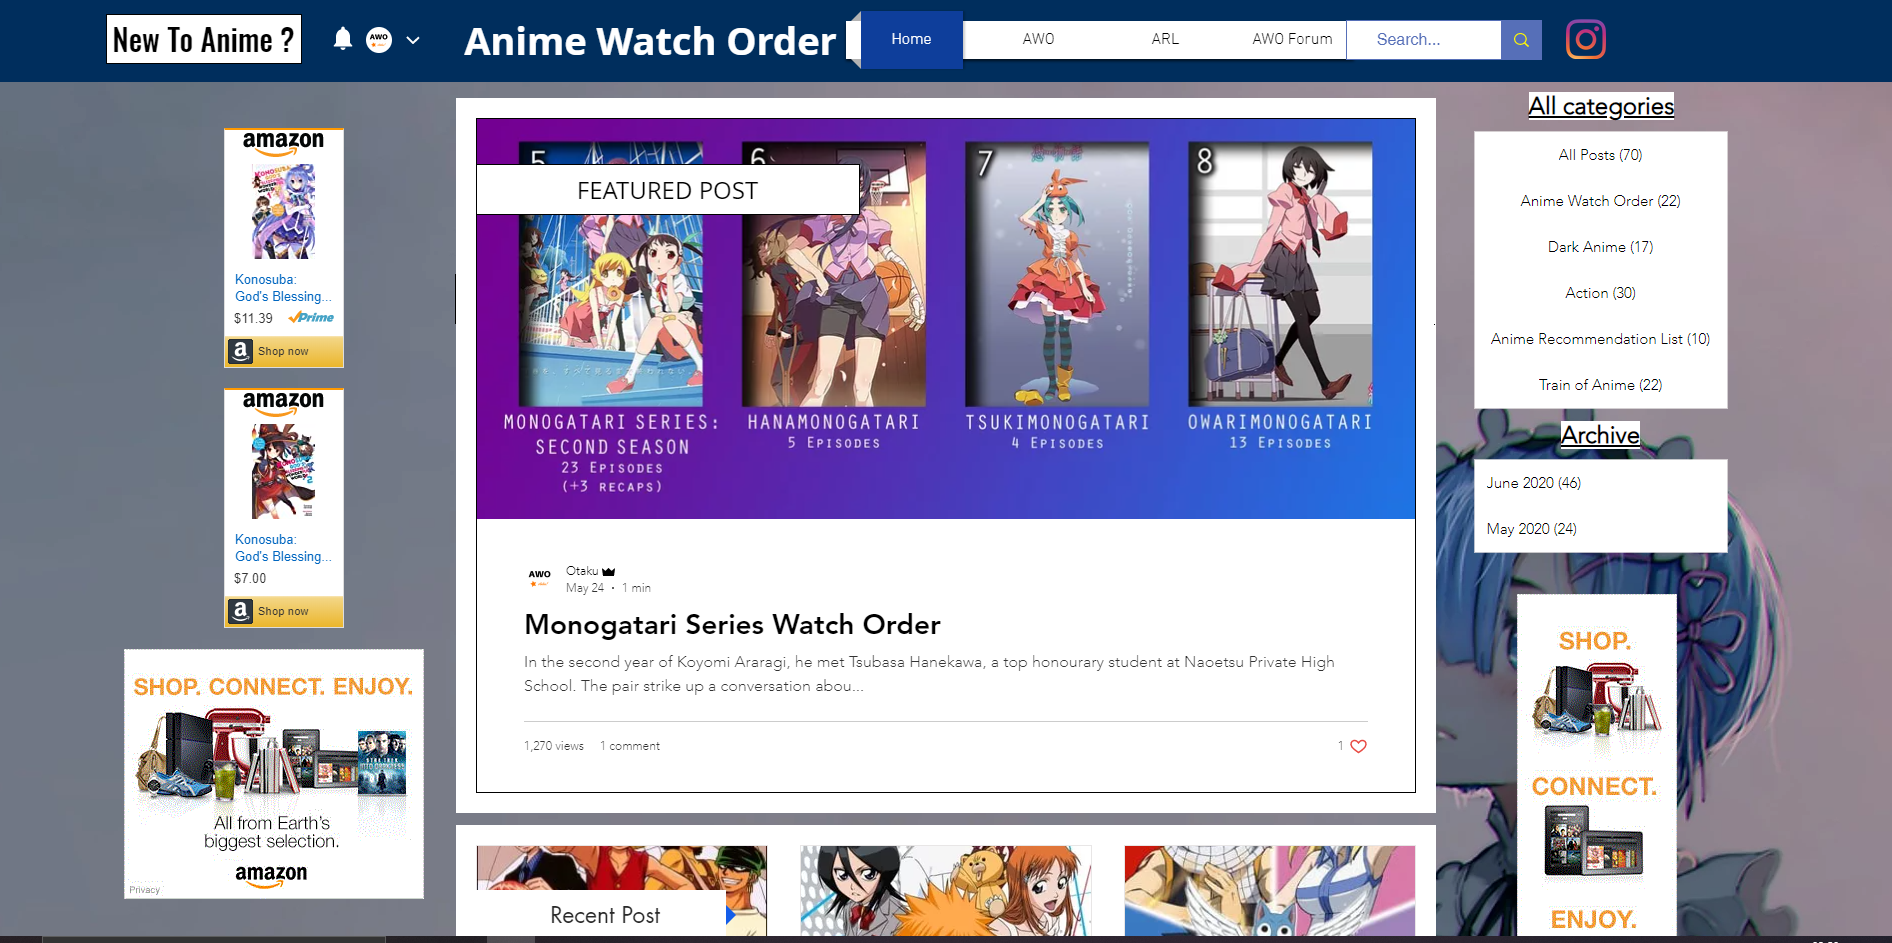 Animewatchorder Landing page